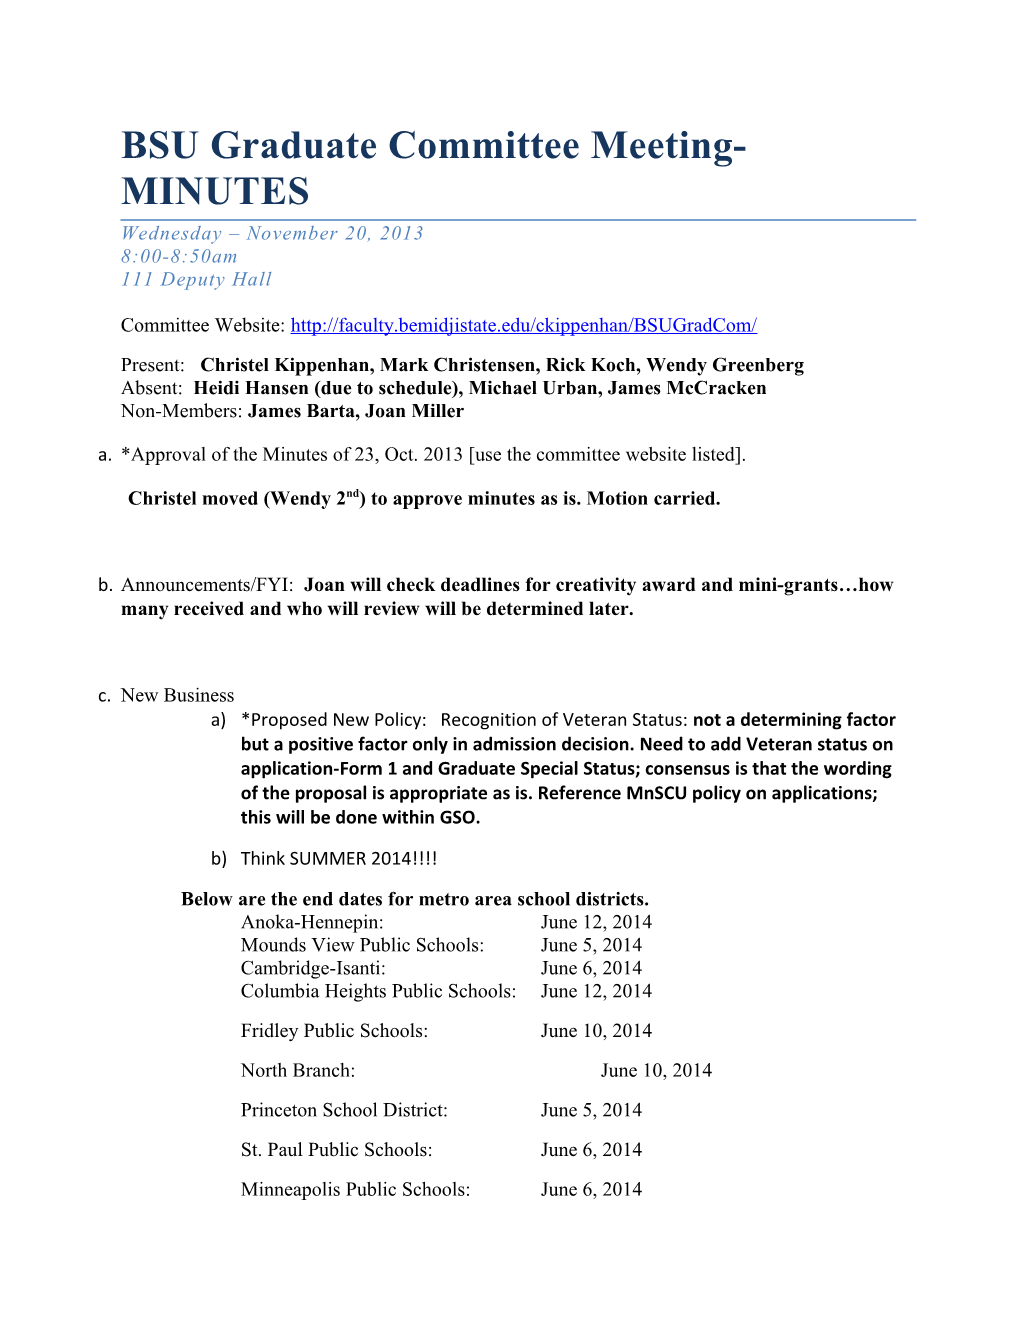 BSU Graduate Committee Meeting-MINUTES